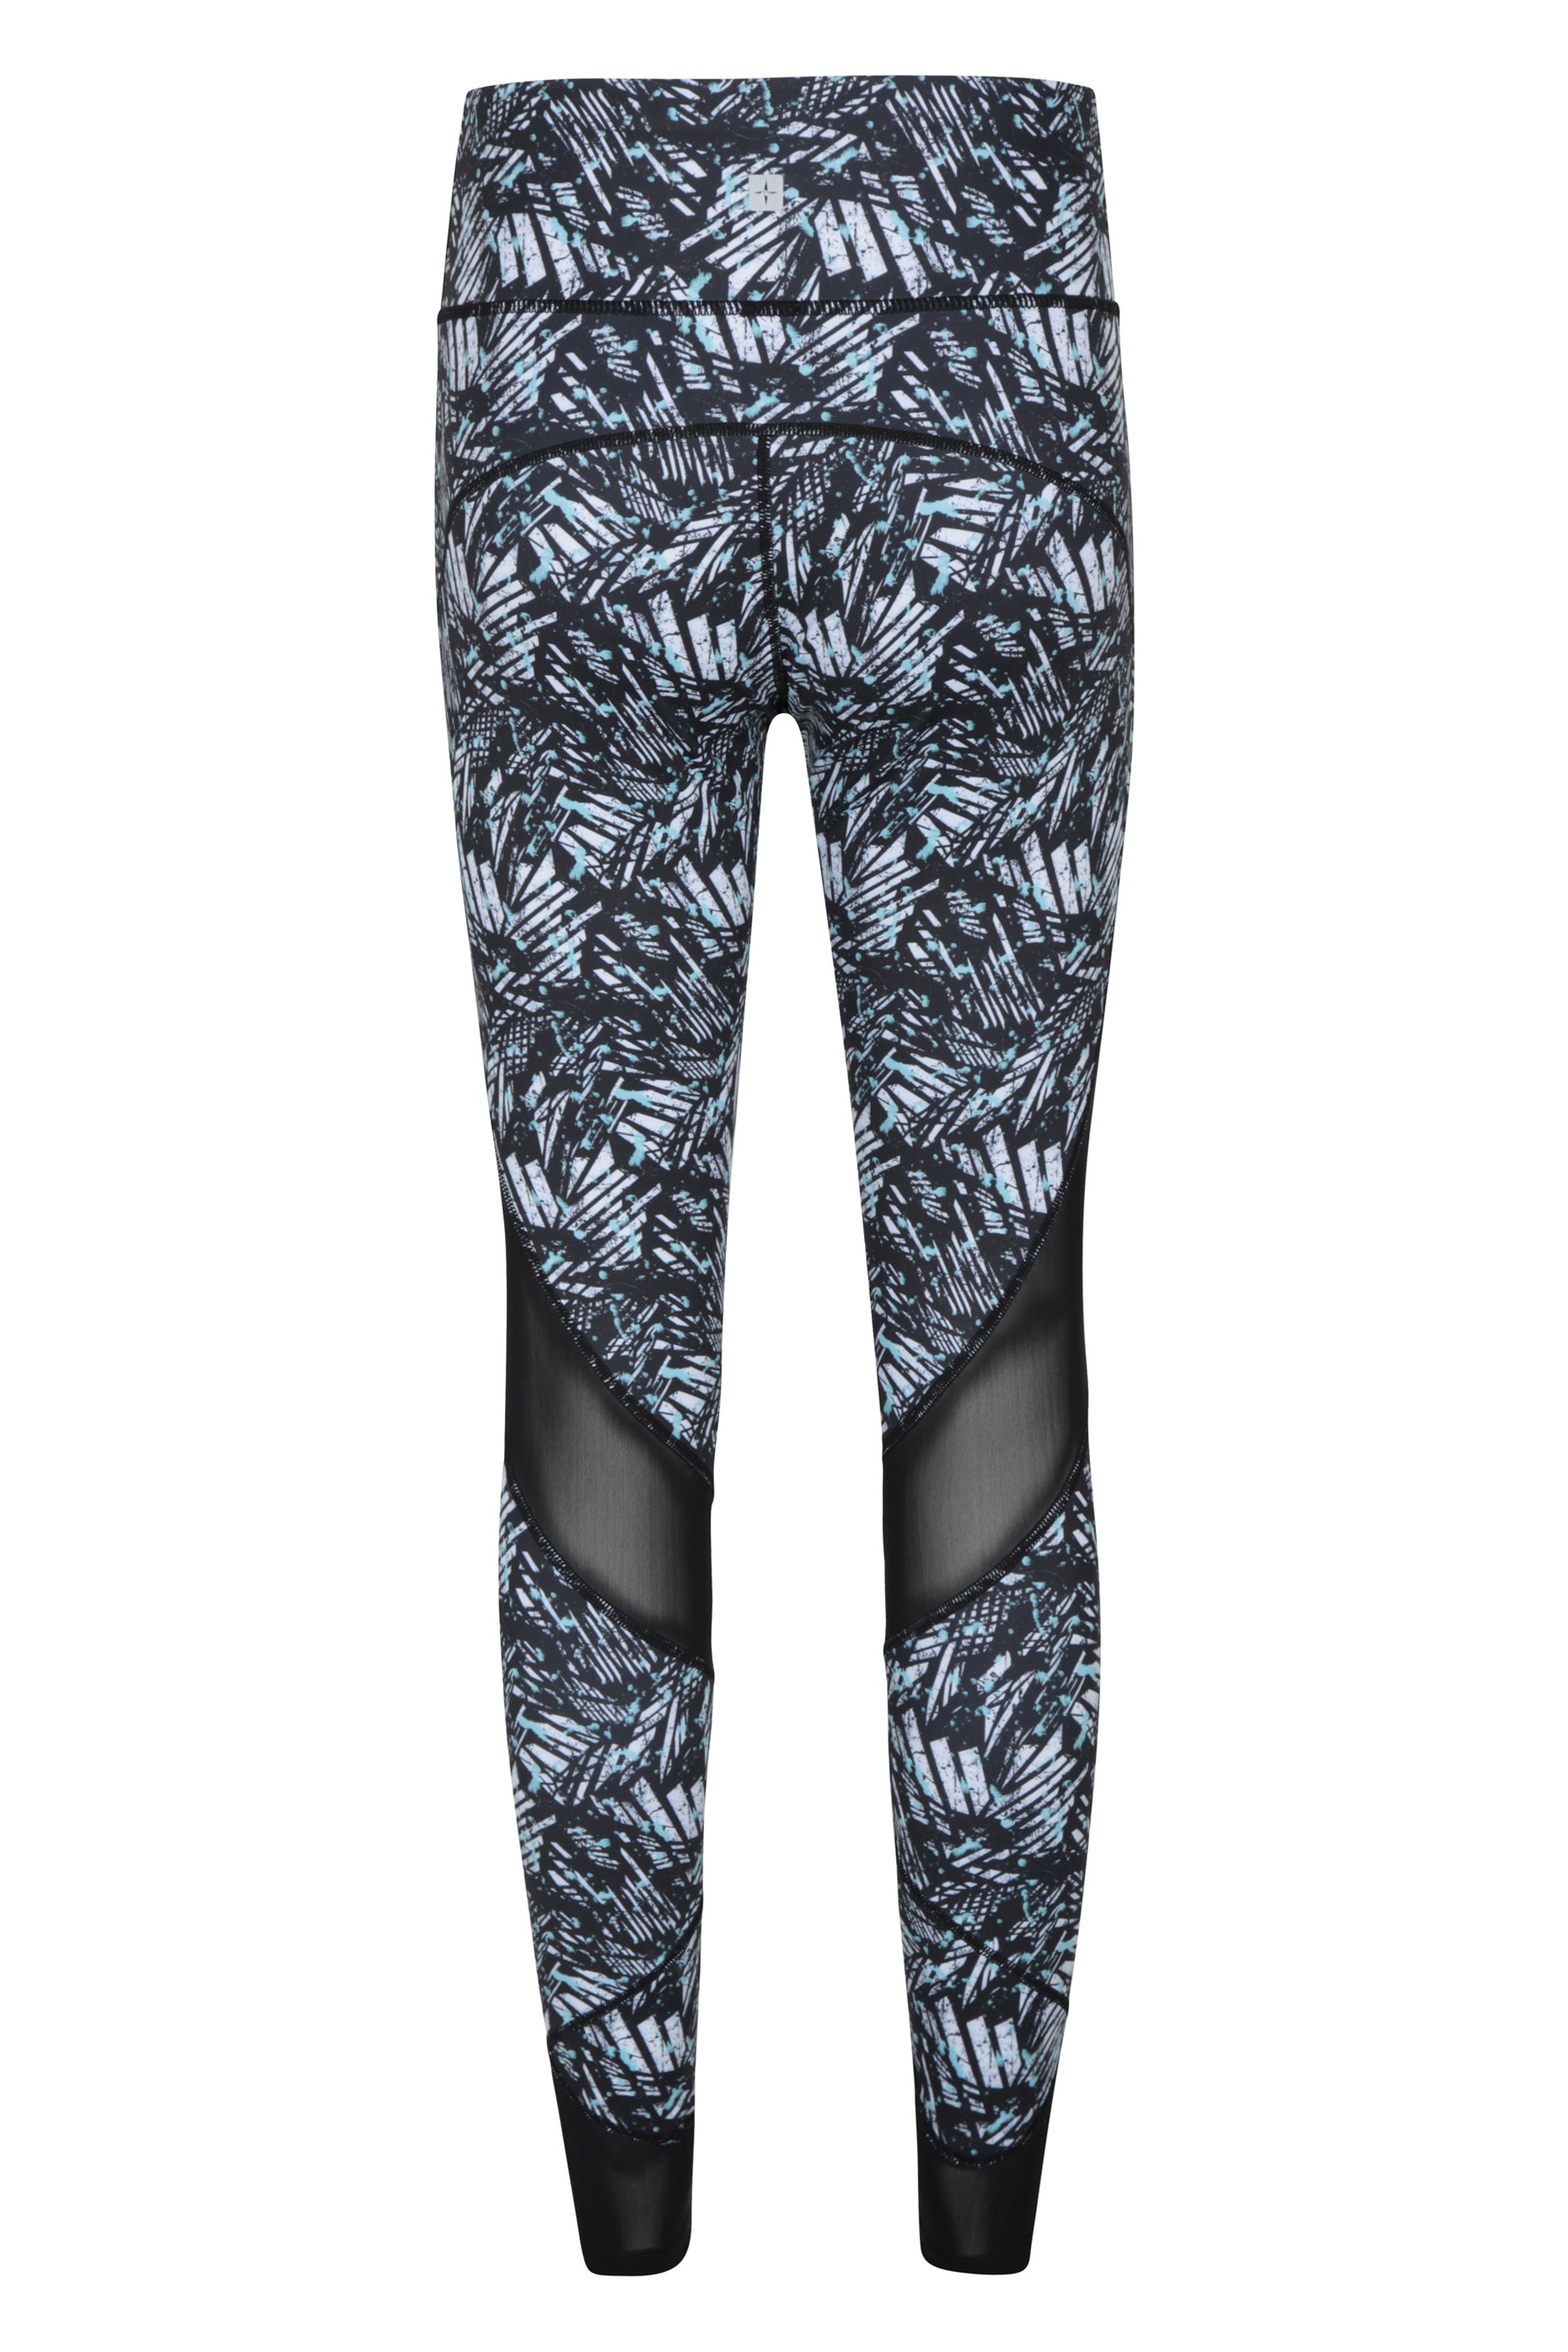 high waisted patterned leggings